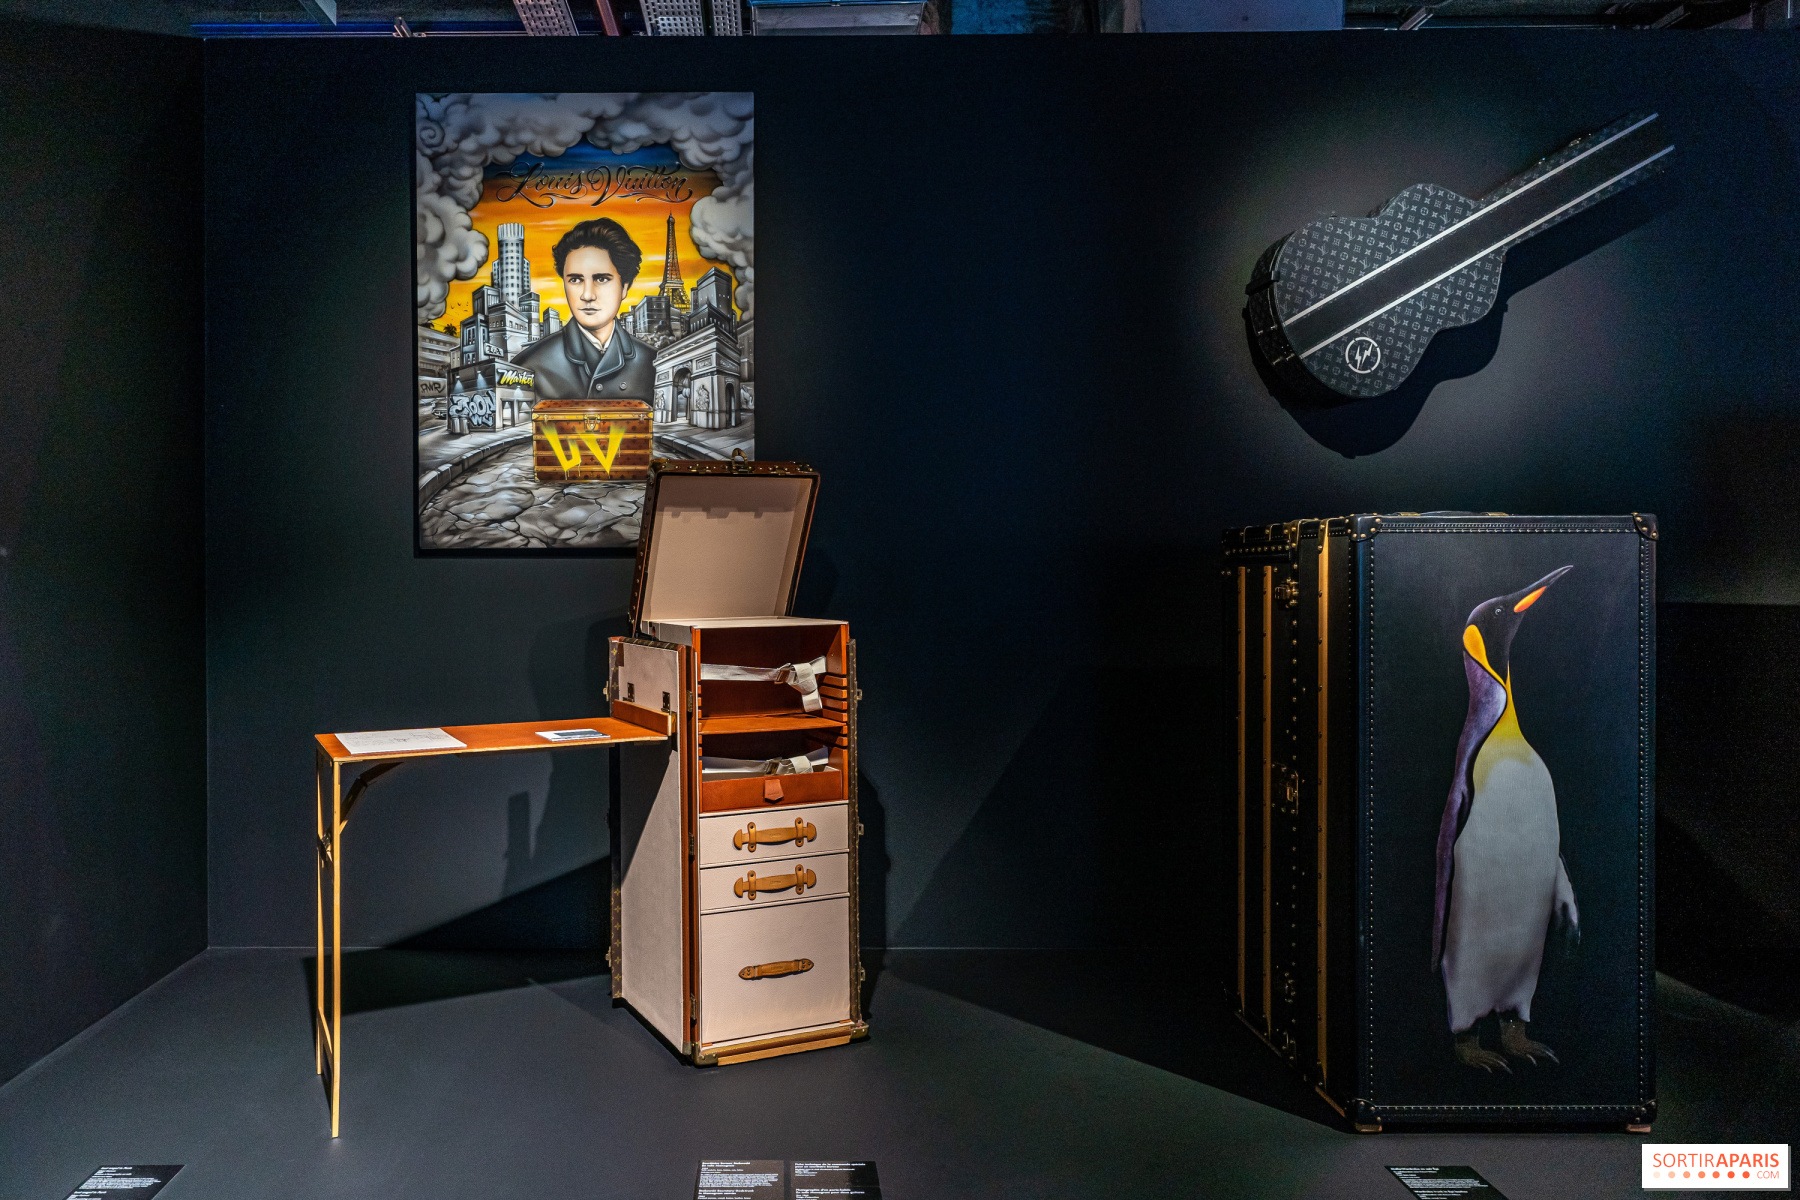 LV Dream by Louis Vuitton: kostenlose Ausstellung, Boutique, Café